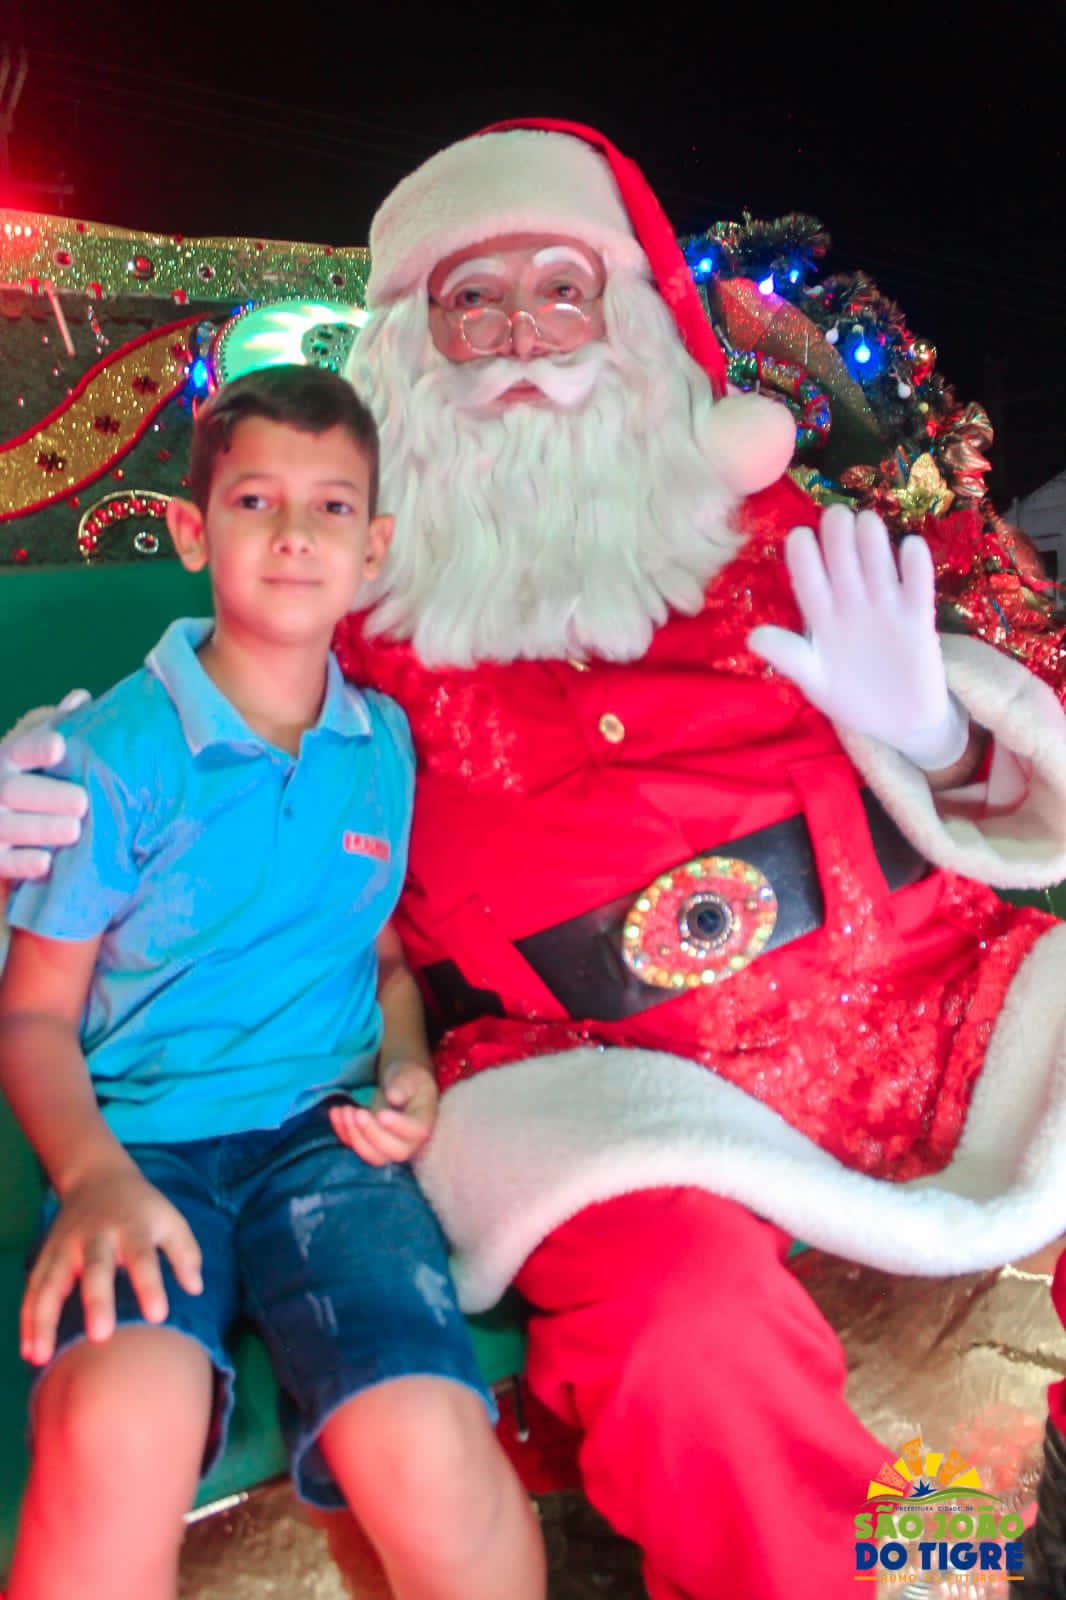 WhatsApp-Image-2021-12-22-at-10.47.48-2 Visita do Papai Noel encheu o município de São João do Tigre de magia e alegria